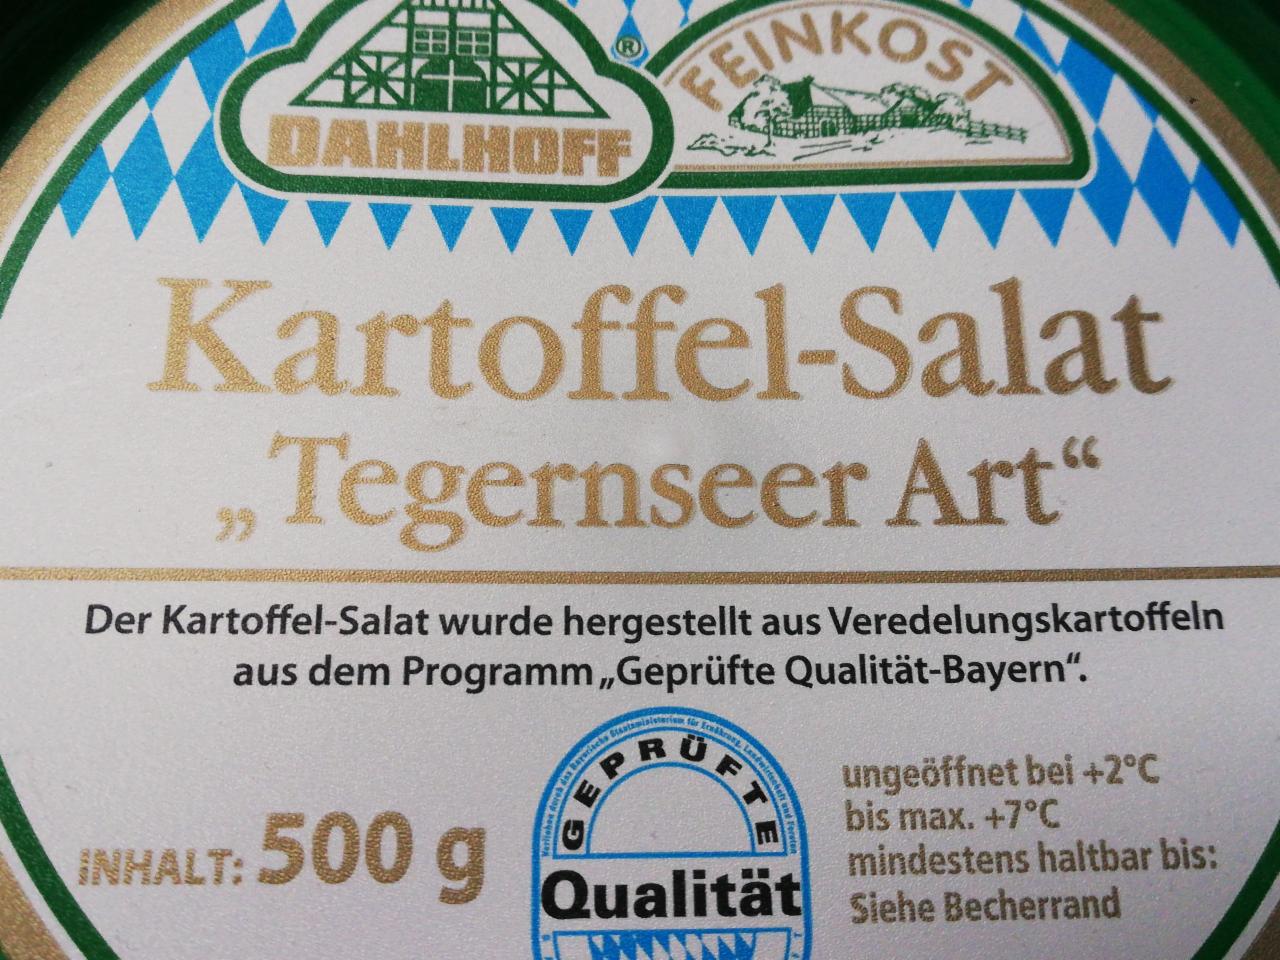 Fotografie - Kartoffel-Salat “Tegernsee”